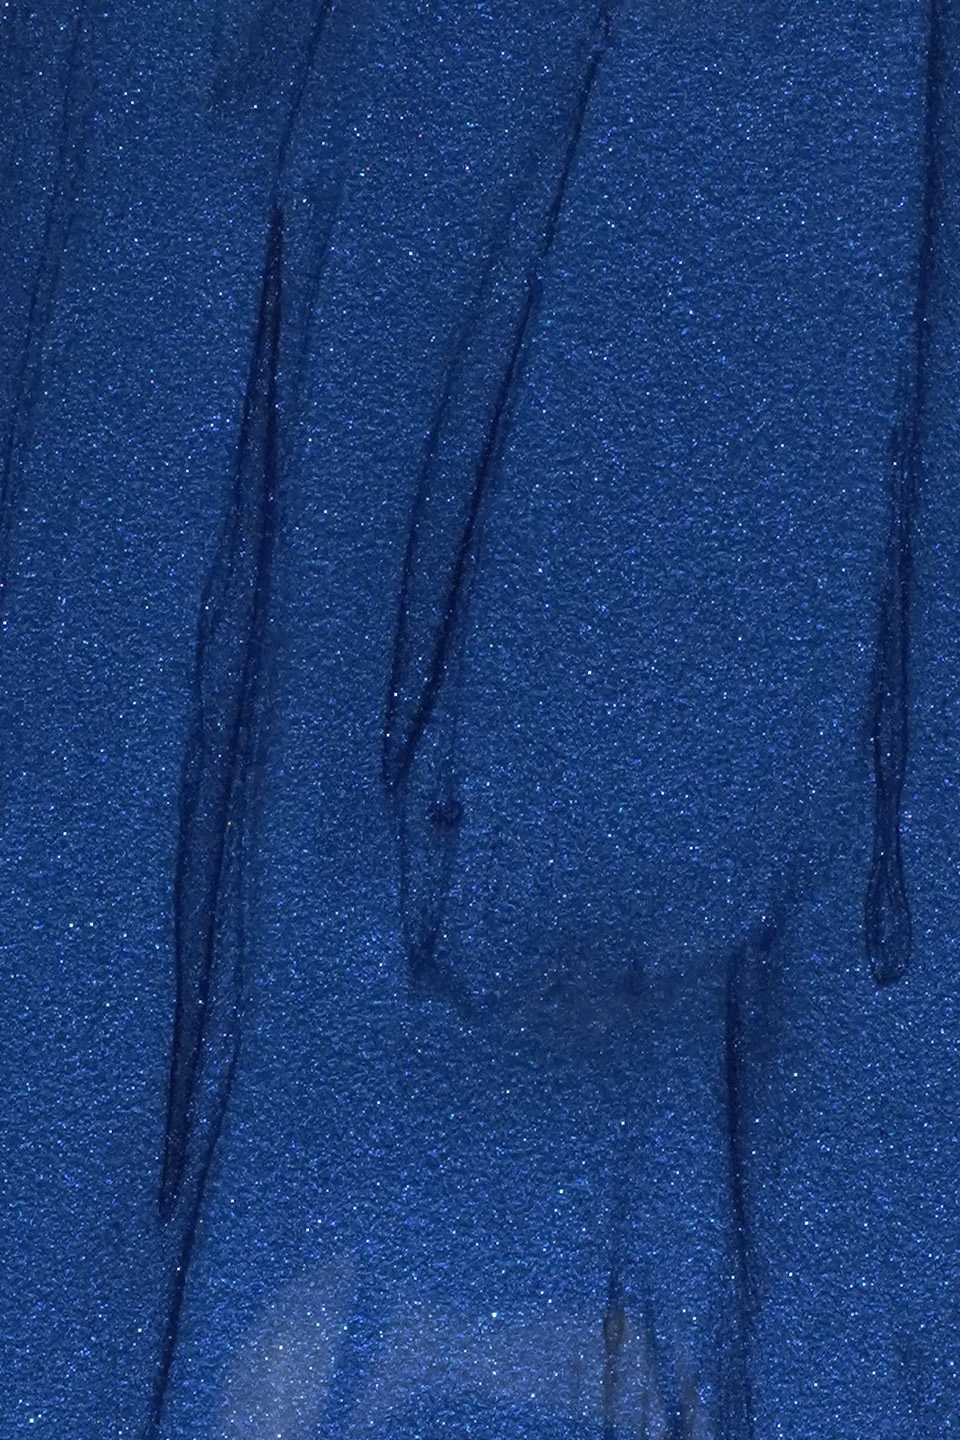 Gel UV colorato blu elettrico 5 g